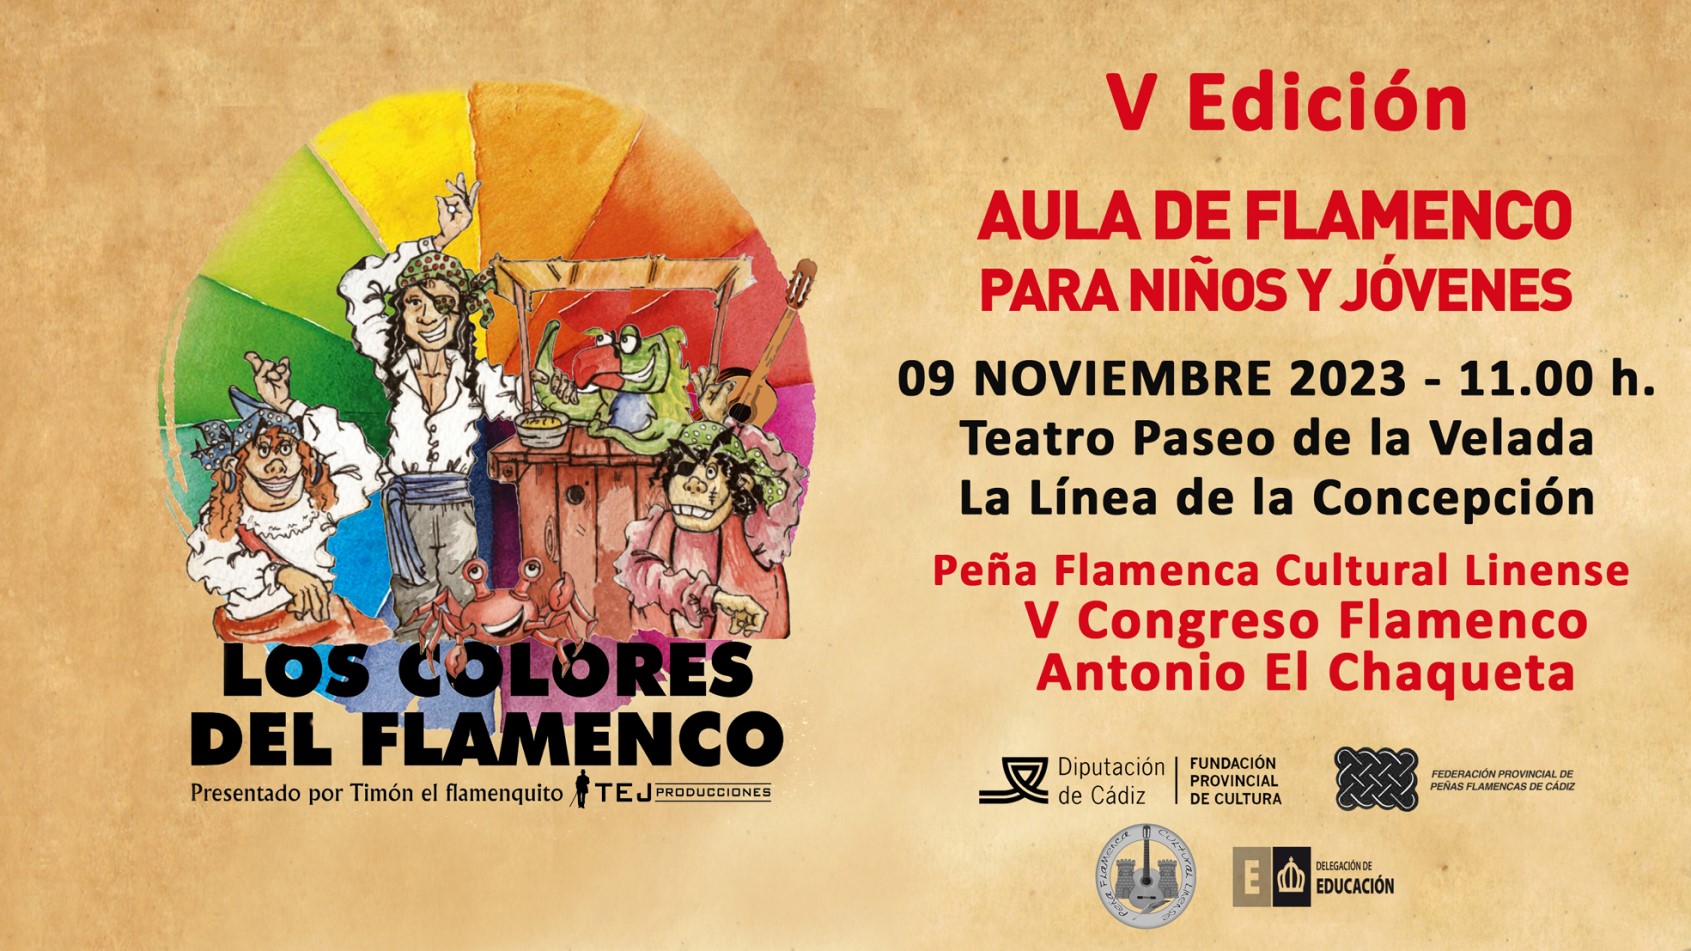 2. Aula de Flamenco V Congreso Flamenco Antonio El Chaqueta